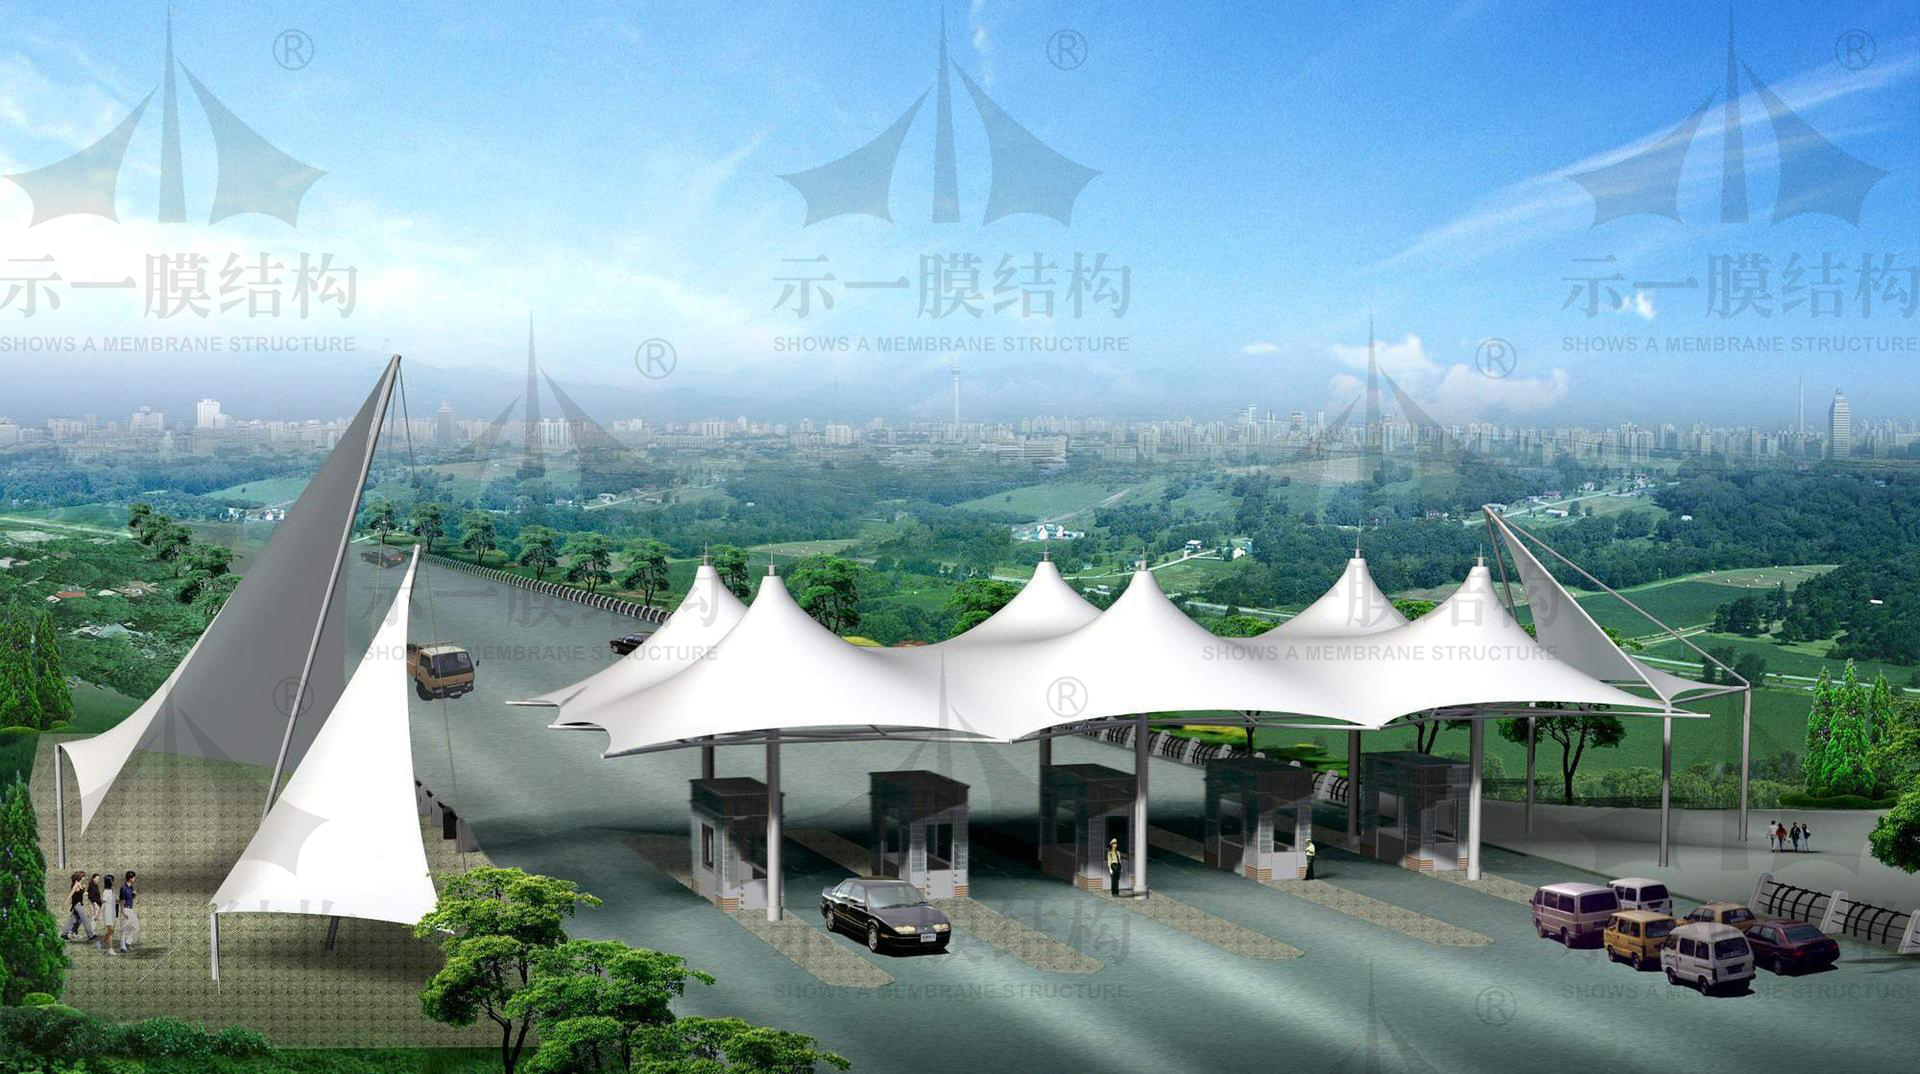 上海示一膜结构收费站出入口膜结构方案